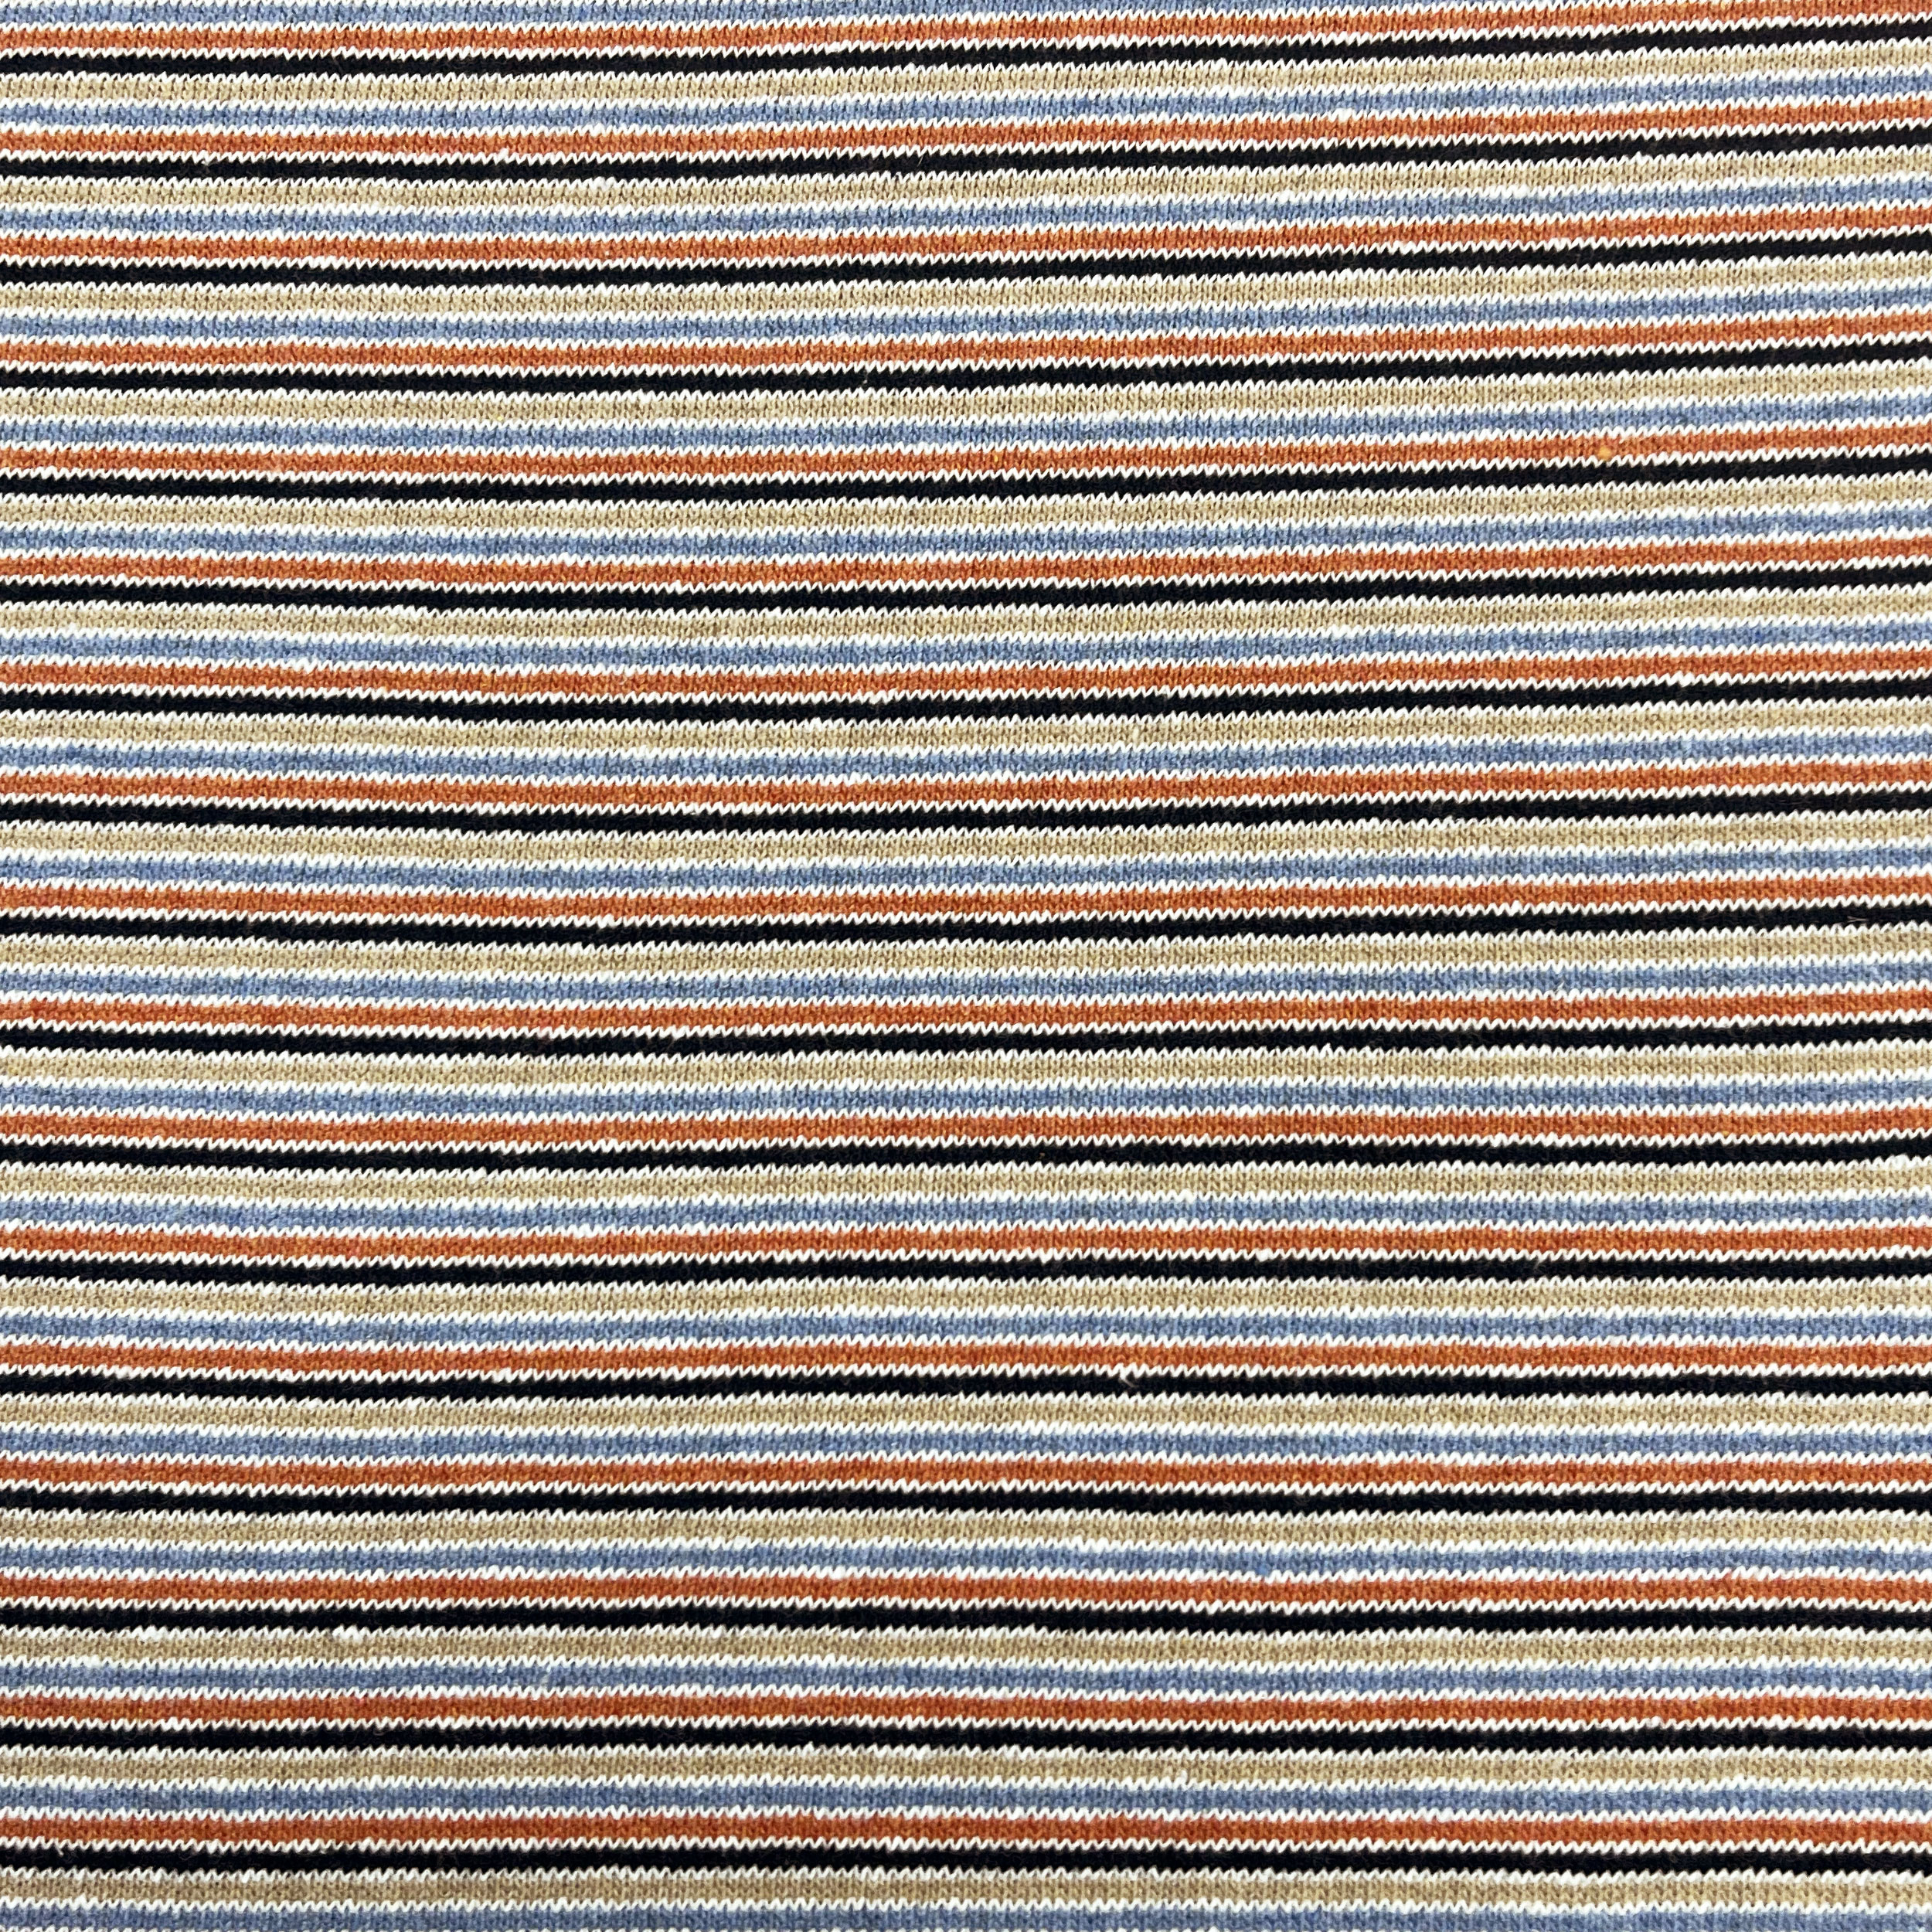 Tessuto cotone maglia righe blu arancio beige